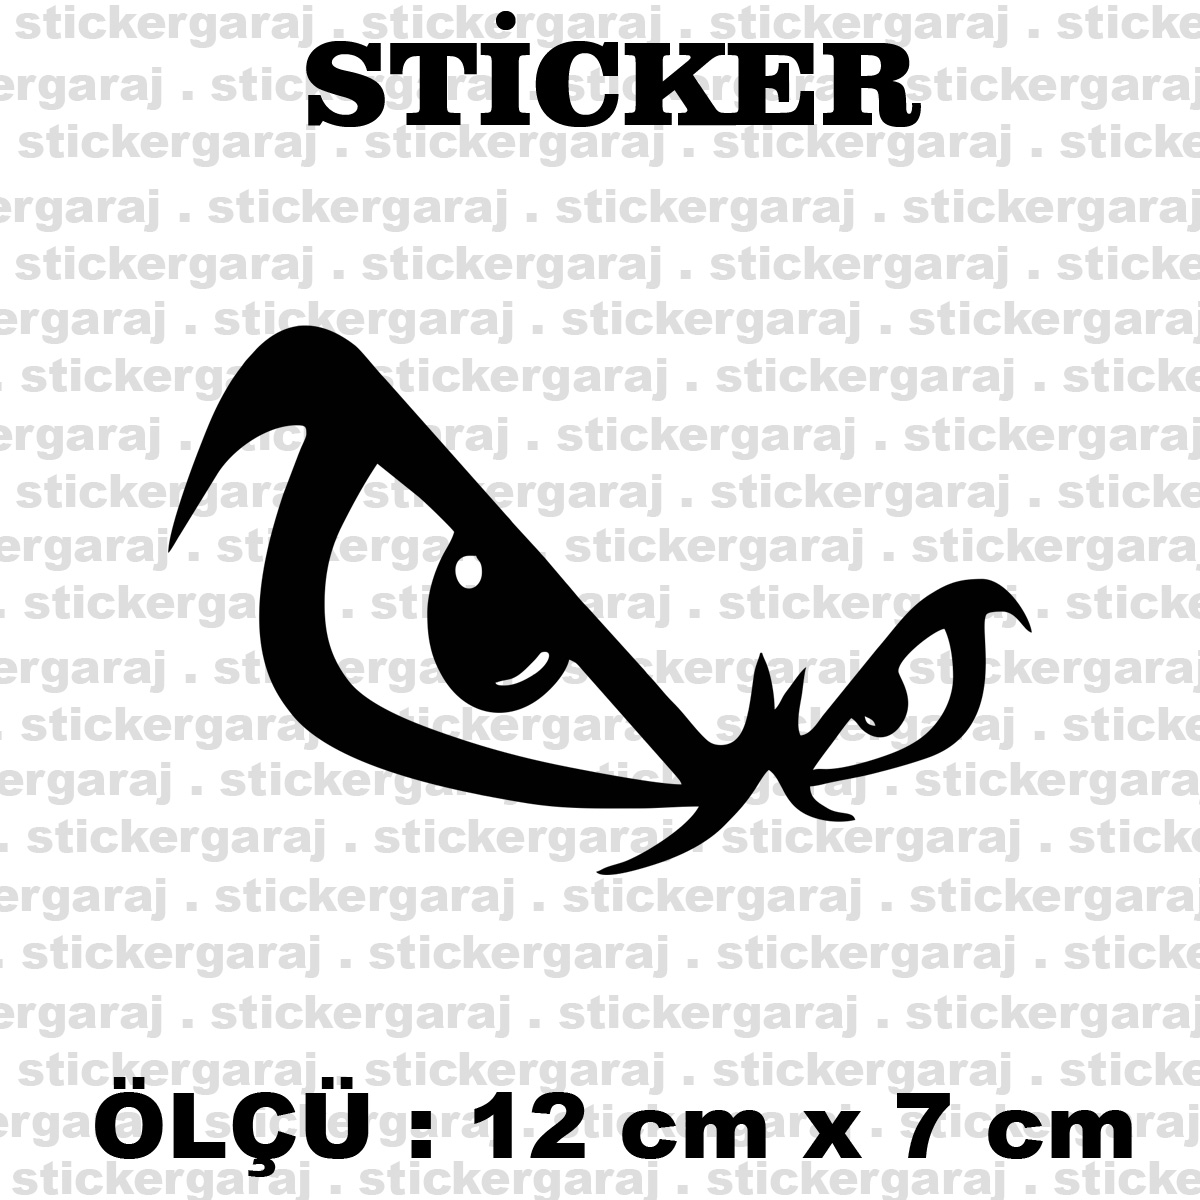 goz 12 7 - Göz kızgın sticker